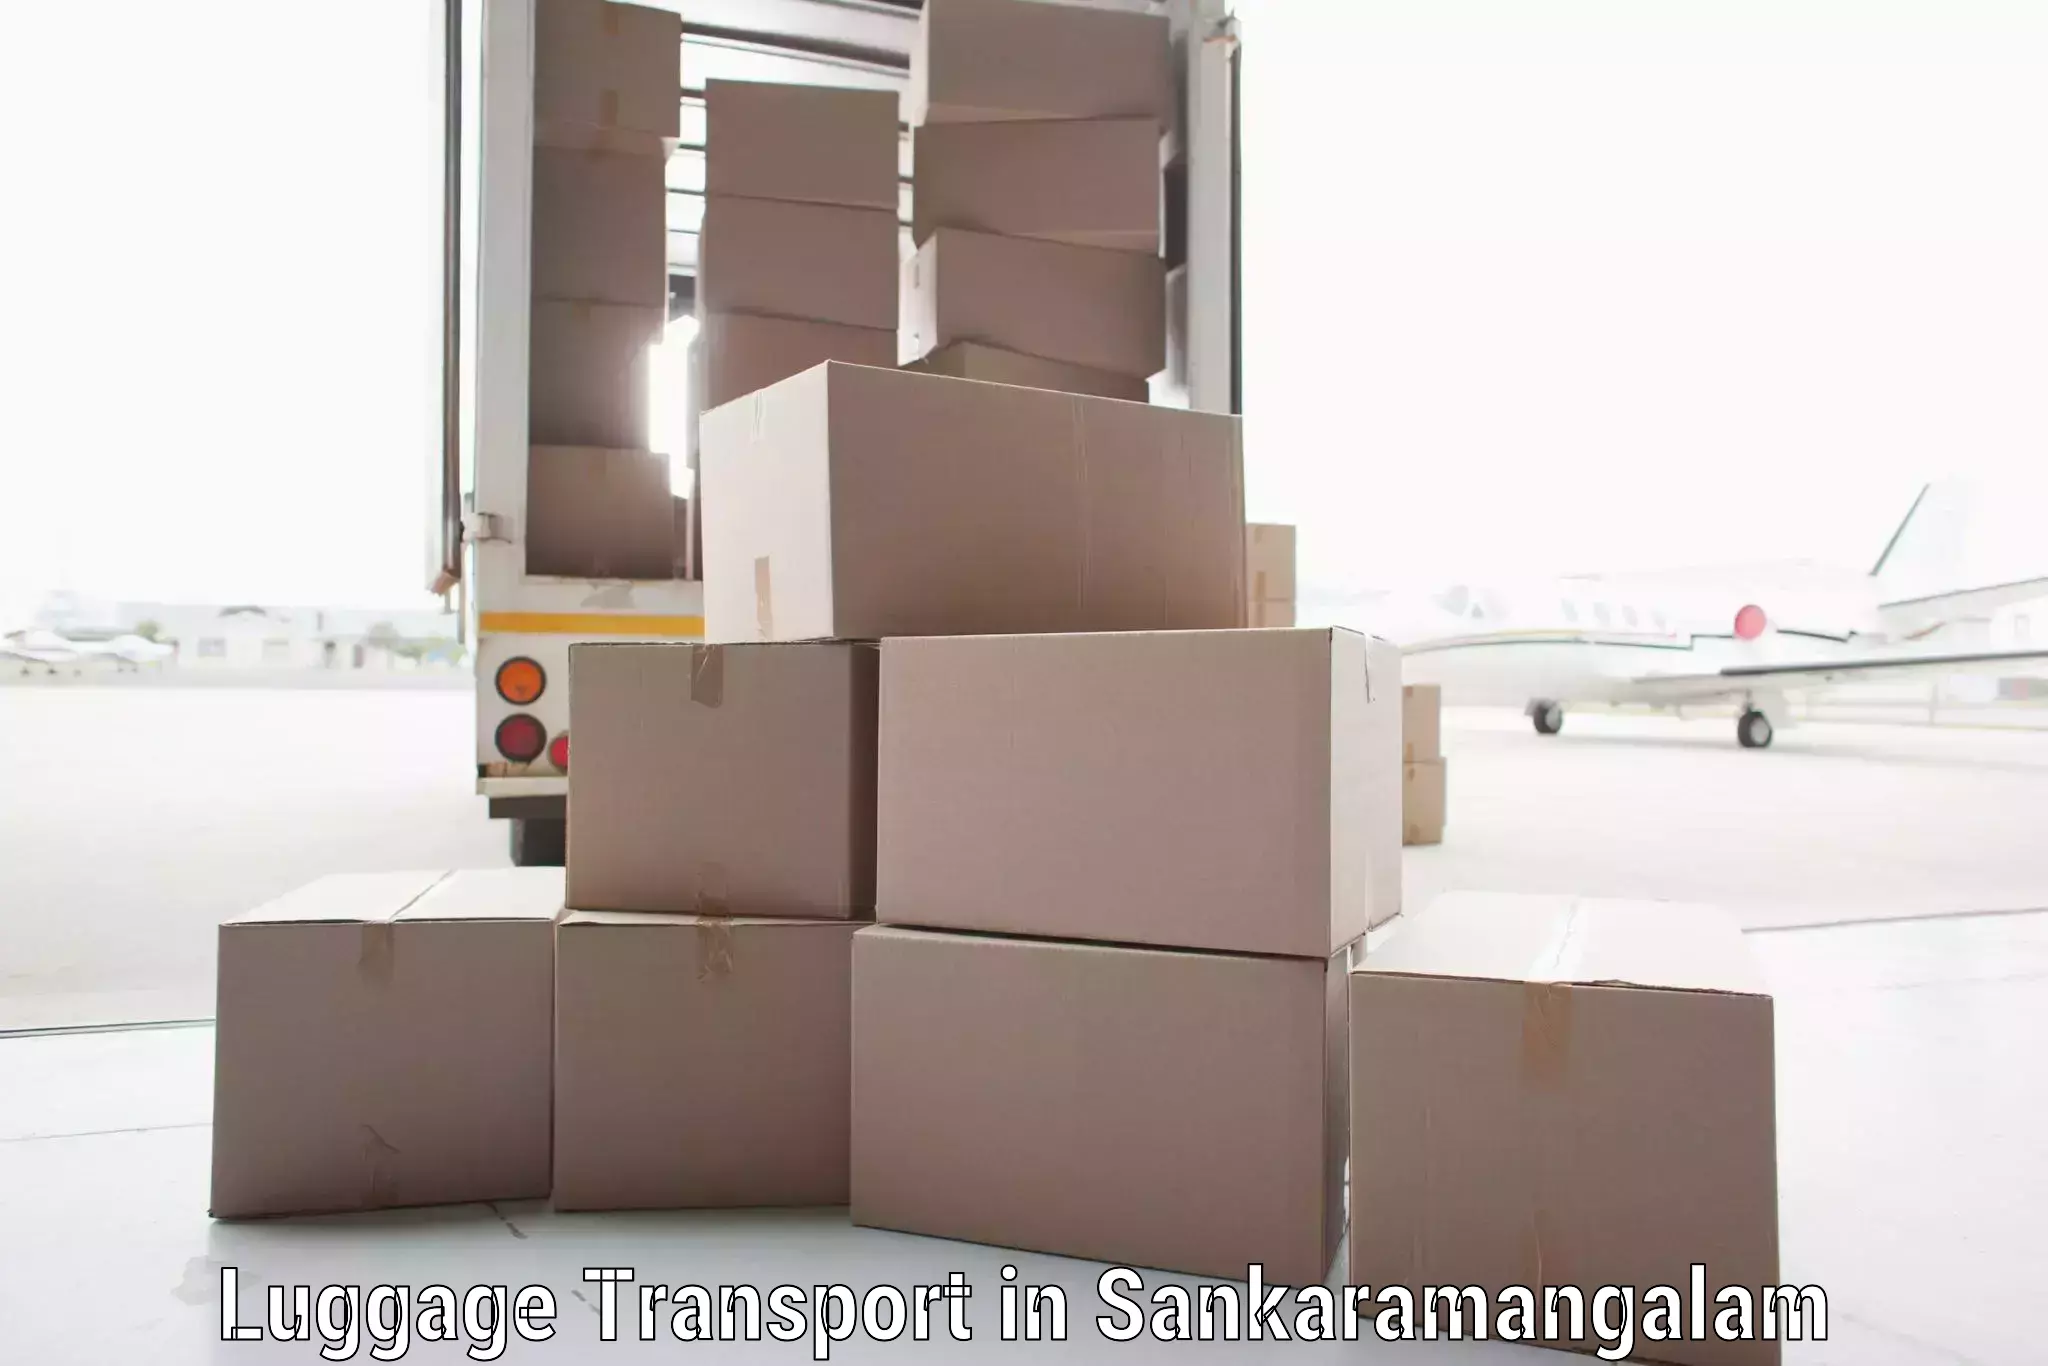 Corporate baggage transport in Sankaramangalam